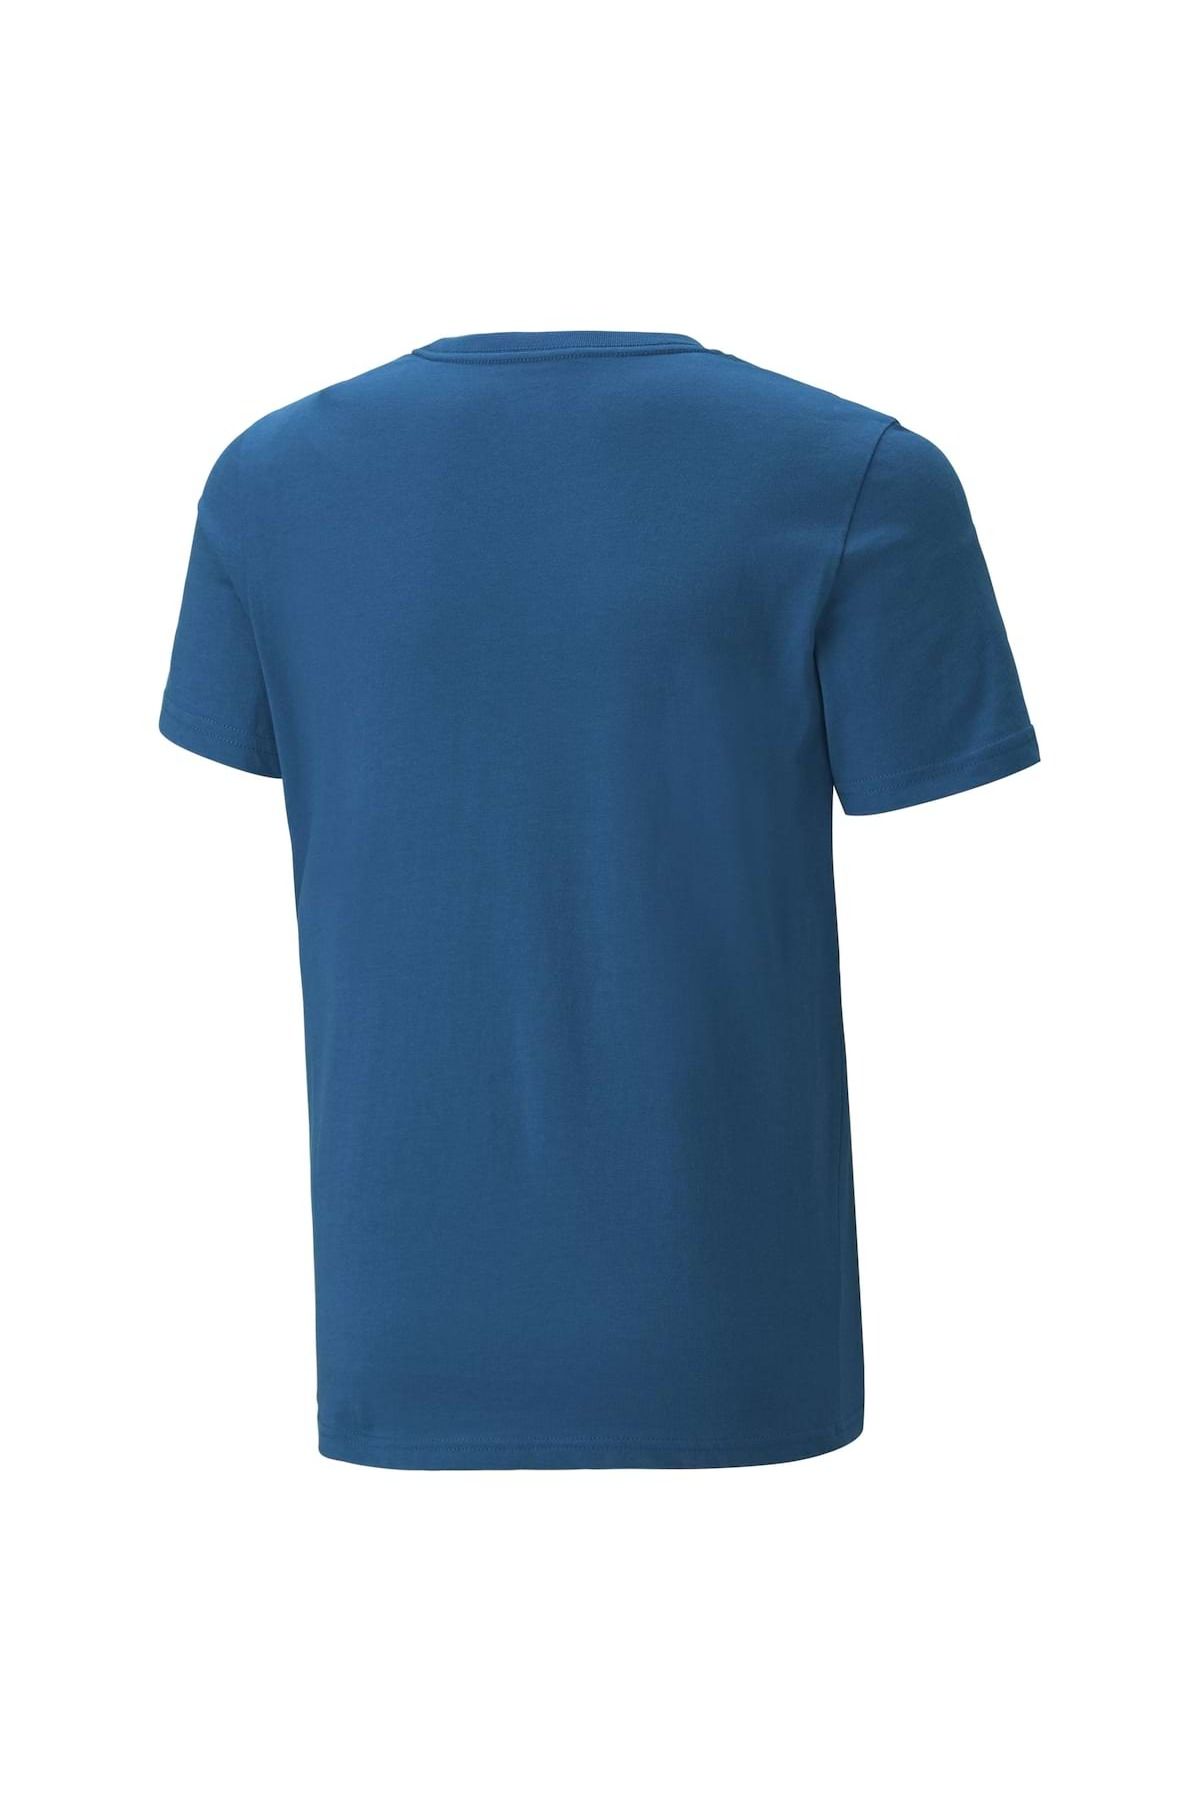 Puma - Rundhals, Col Tee, Logo Jungen Trendyol - 2 ESS+ T-Shirt Kurzarm, uni